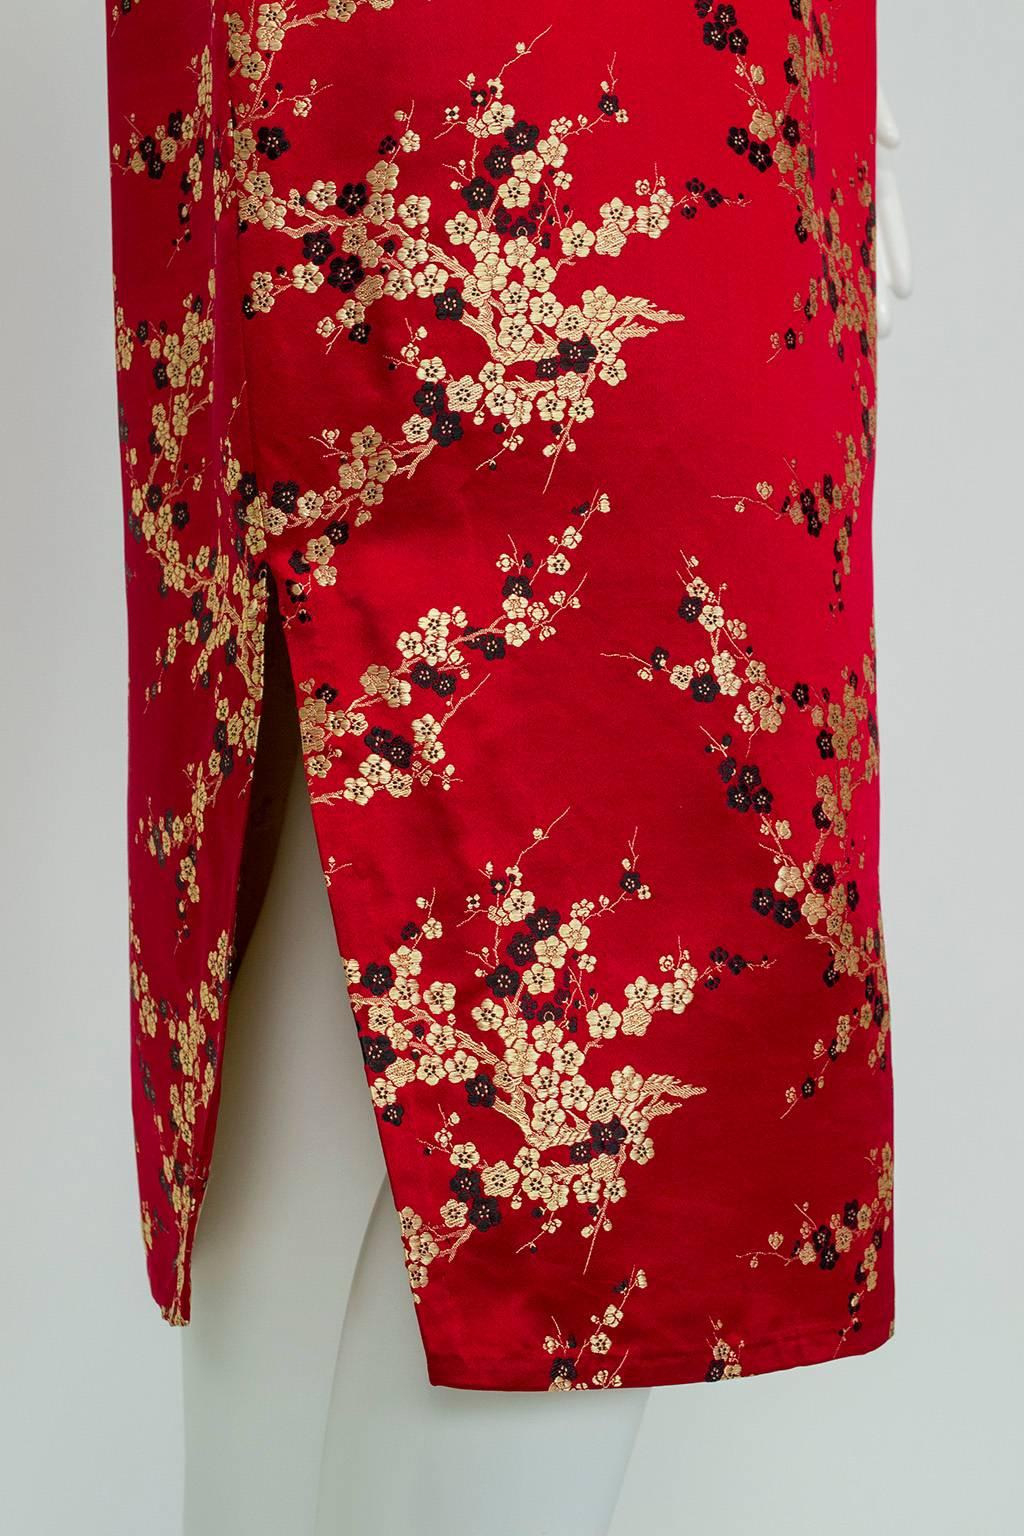 Shanghai Silk Film Noir Qipao Dress, 1940s 2